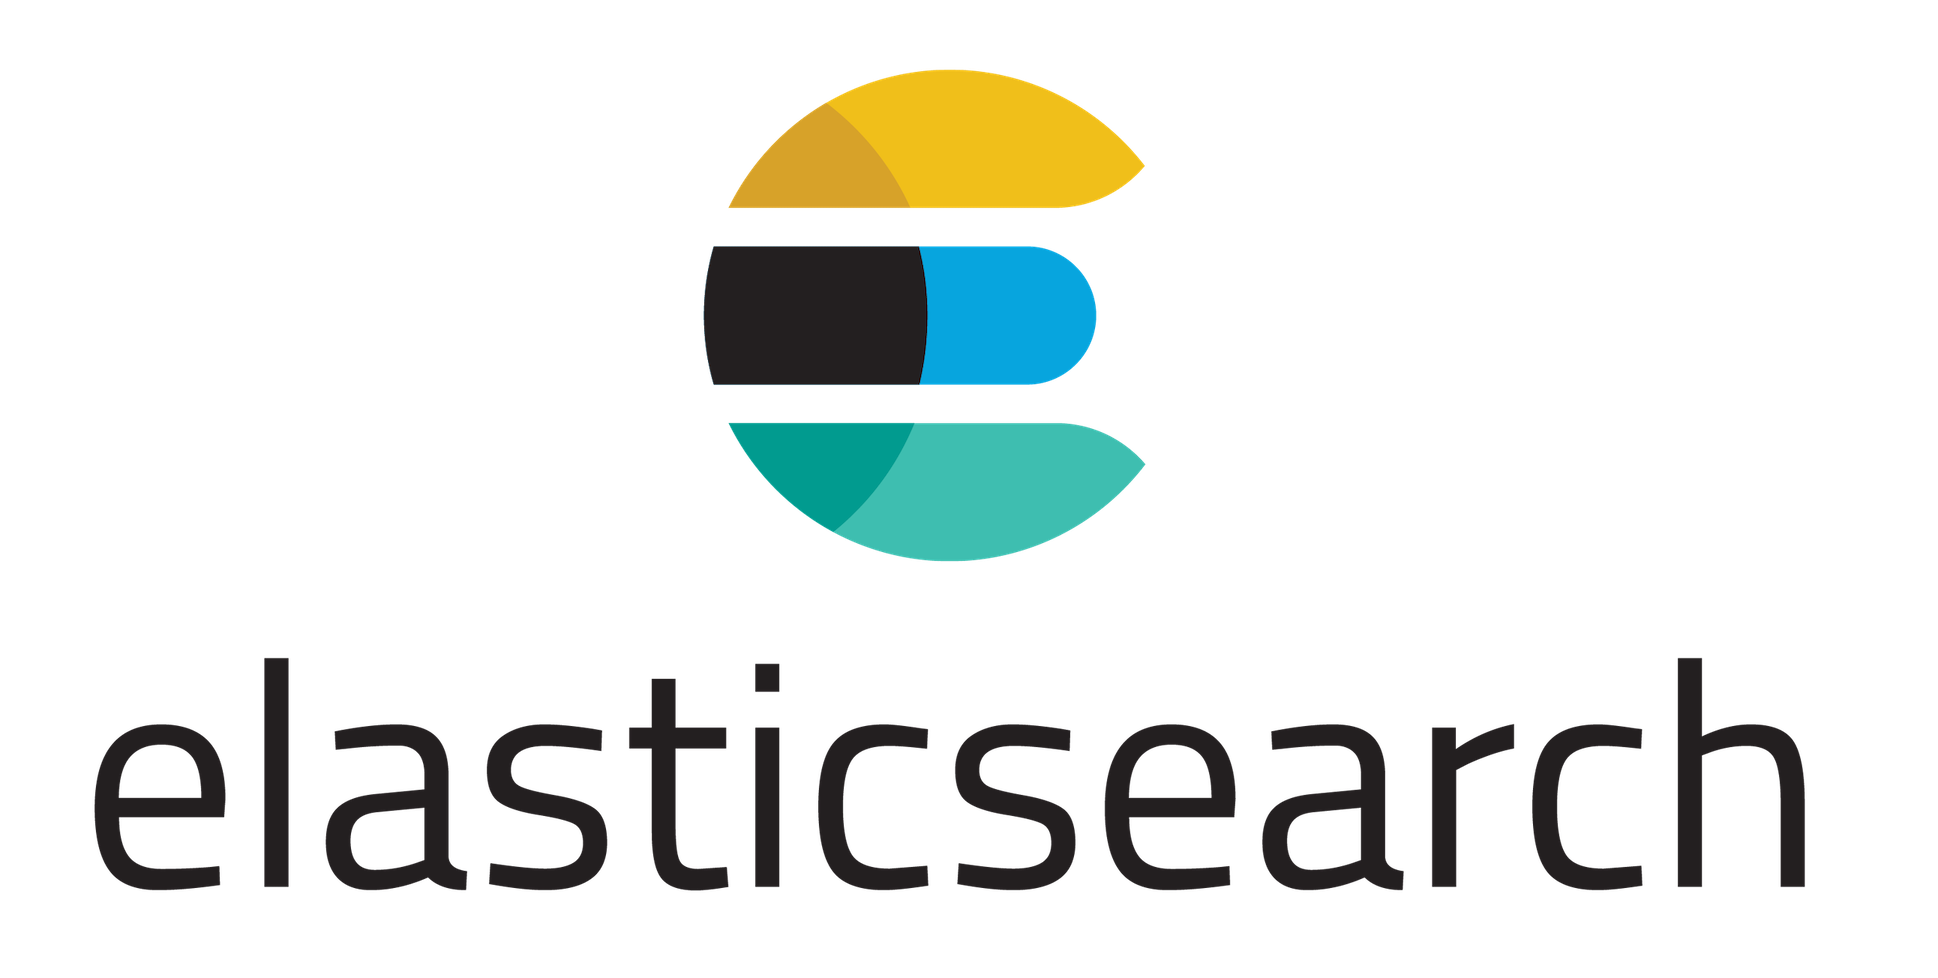 Elastic Search Logo